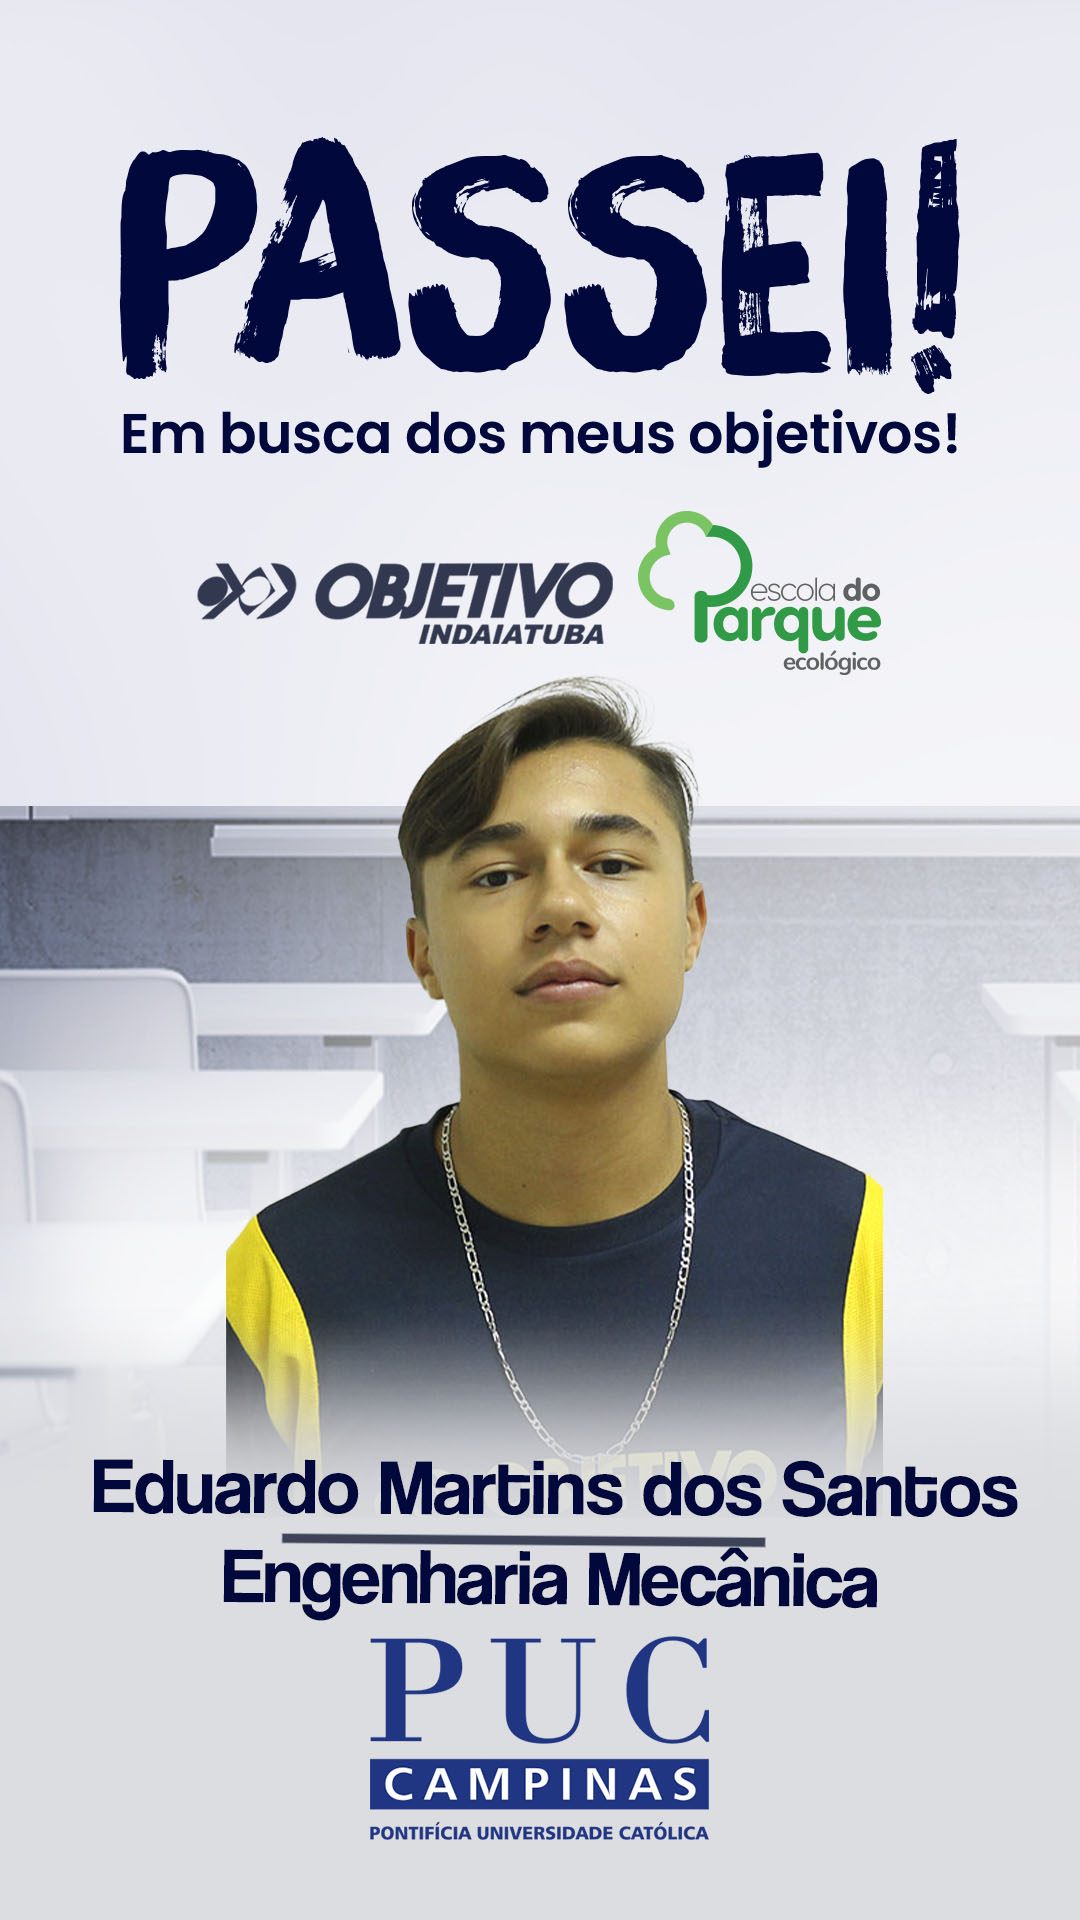 Eduardo Martins dos Santos